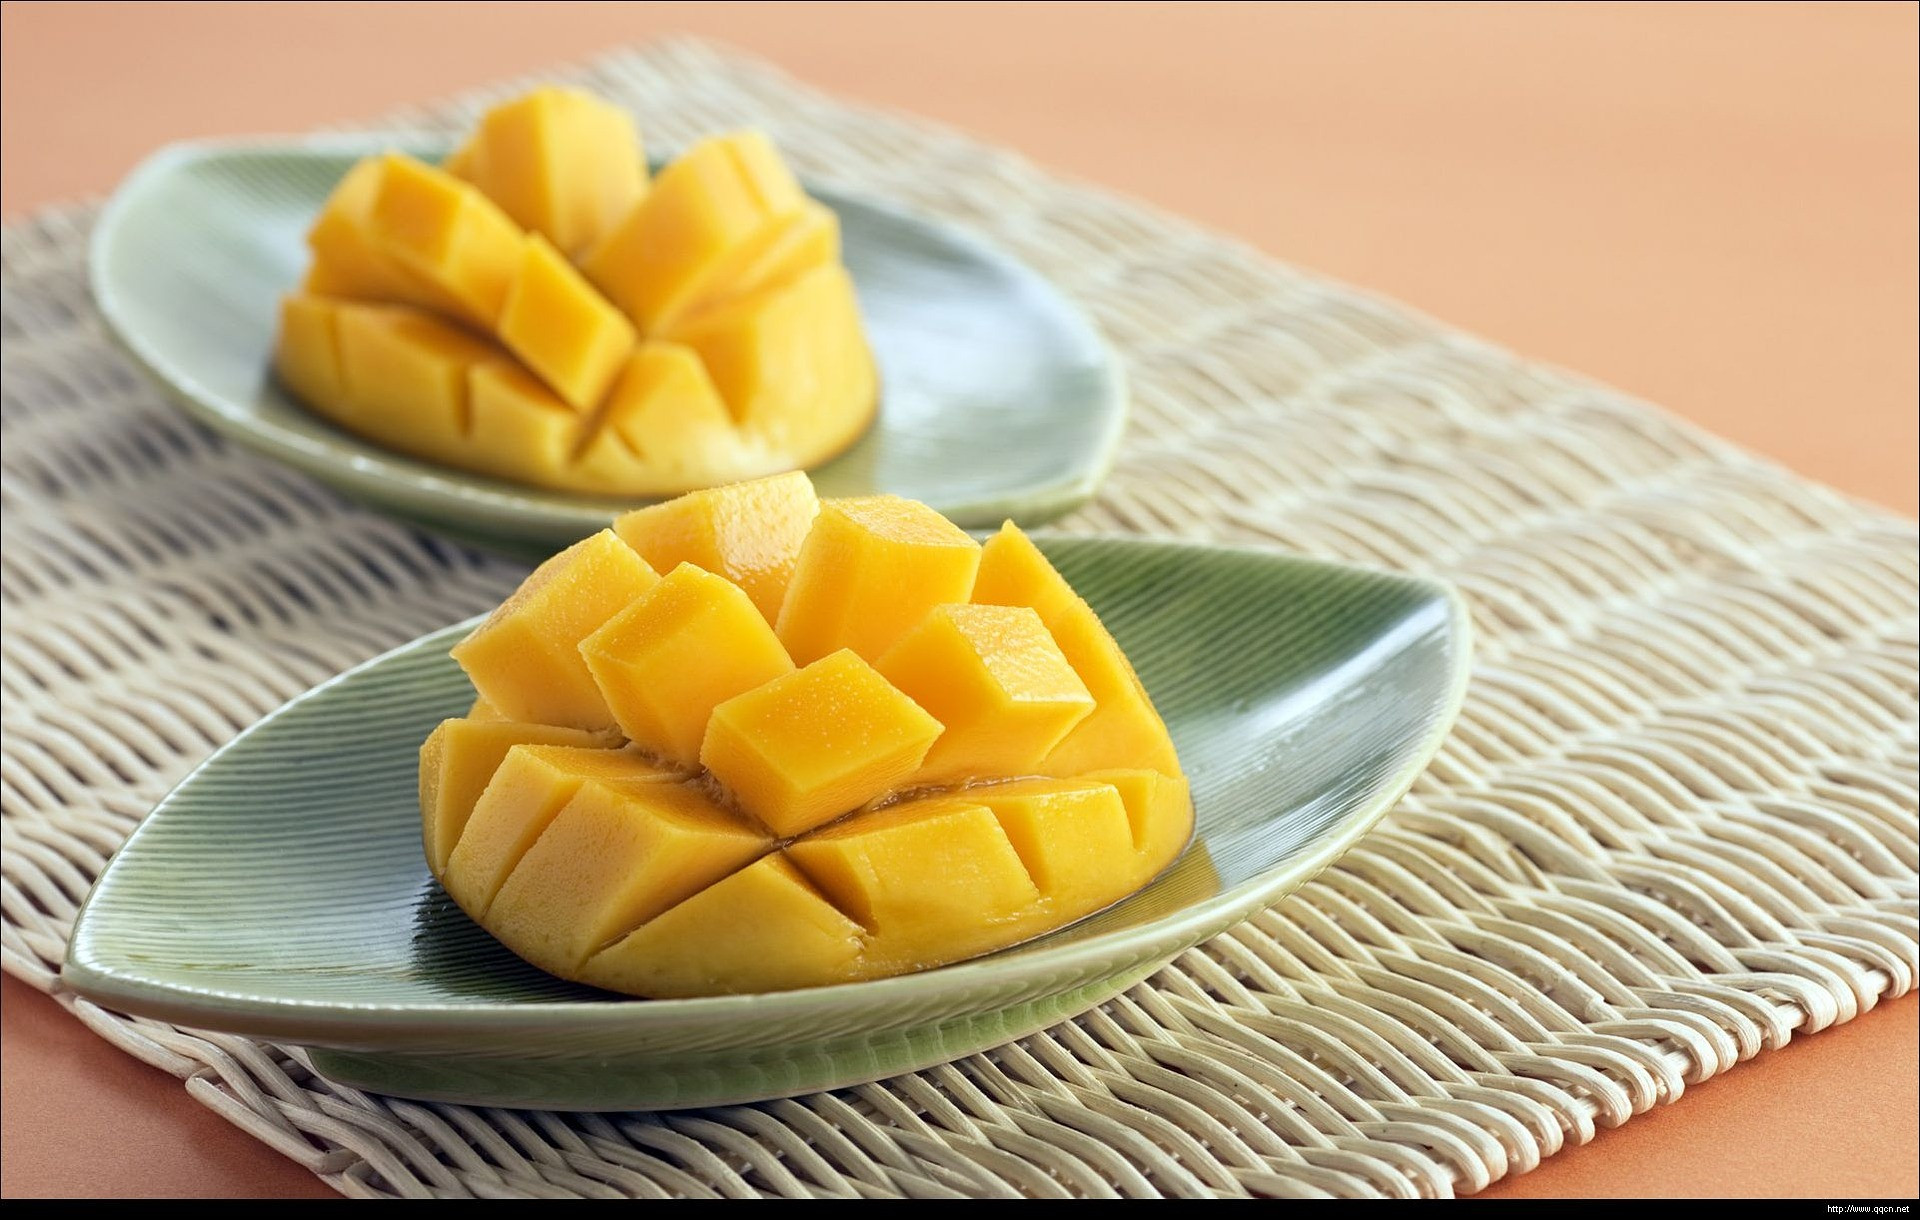 Rovnako ako banány, mango má väčšie percento cukru ako iné ovocie, a preto chutí tak sladko. Jedna šálka manga obsahuje 100 kalórií a 23 gramov cukru. Mango ponúka ďalšie zdravotné výhody, takže ho úplne nevylúčte zo stravy. Namiesto toho ich konzumujte opatrne. 